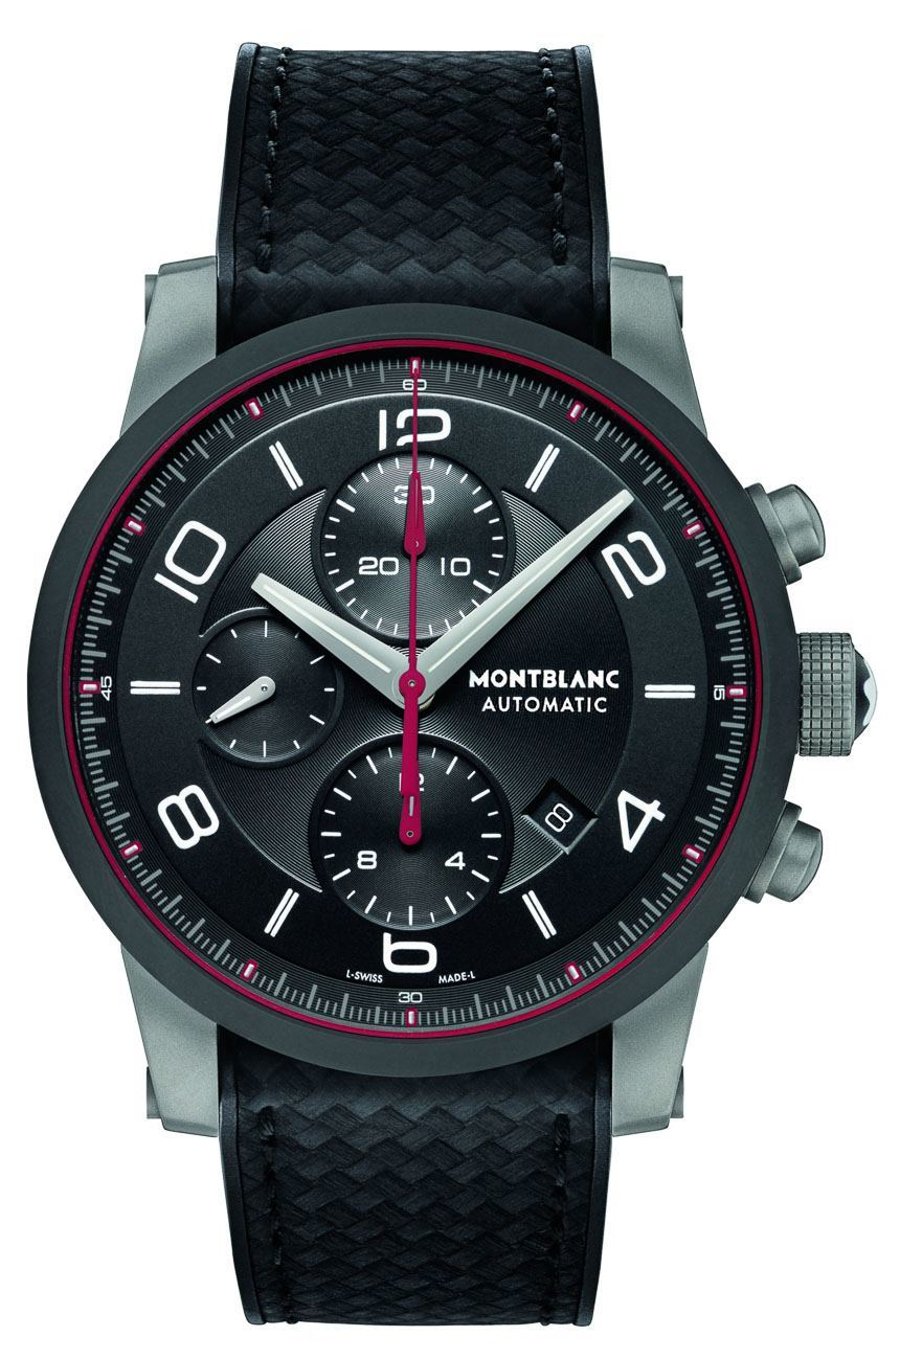 דיווח: Montblanc מייצרת רצועה שתהפוך כל שעון לחכם